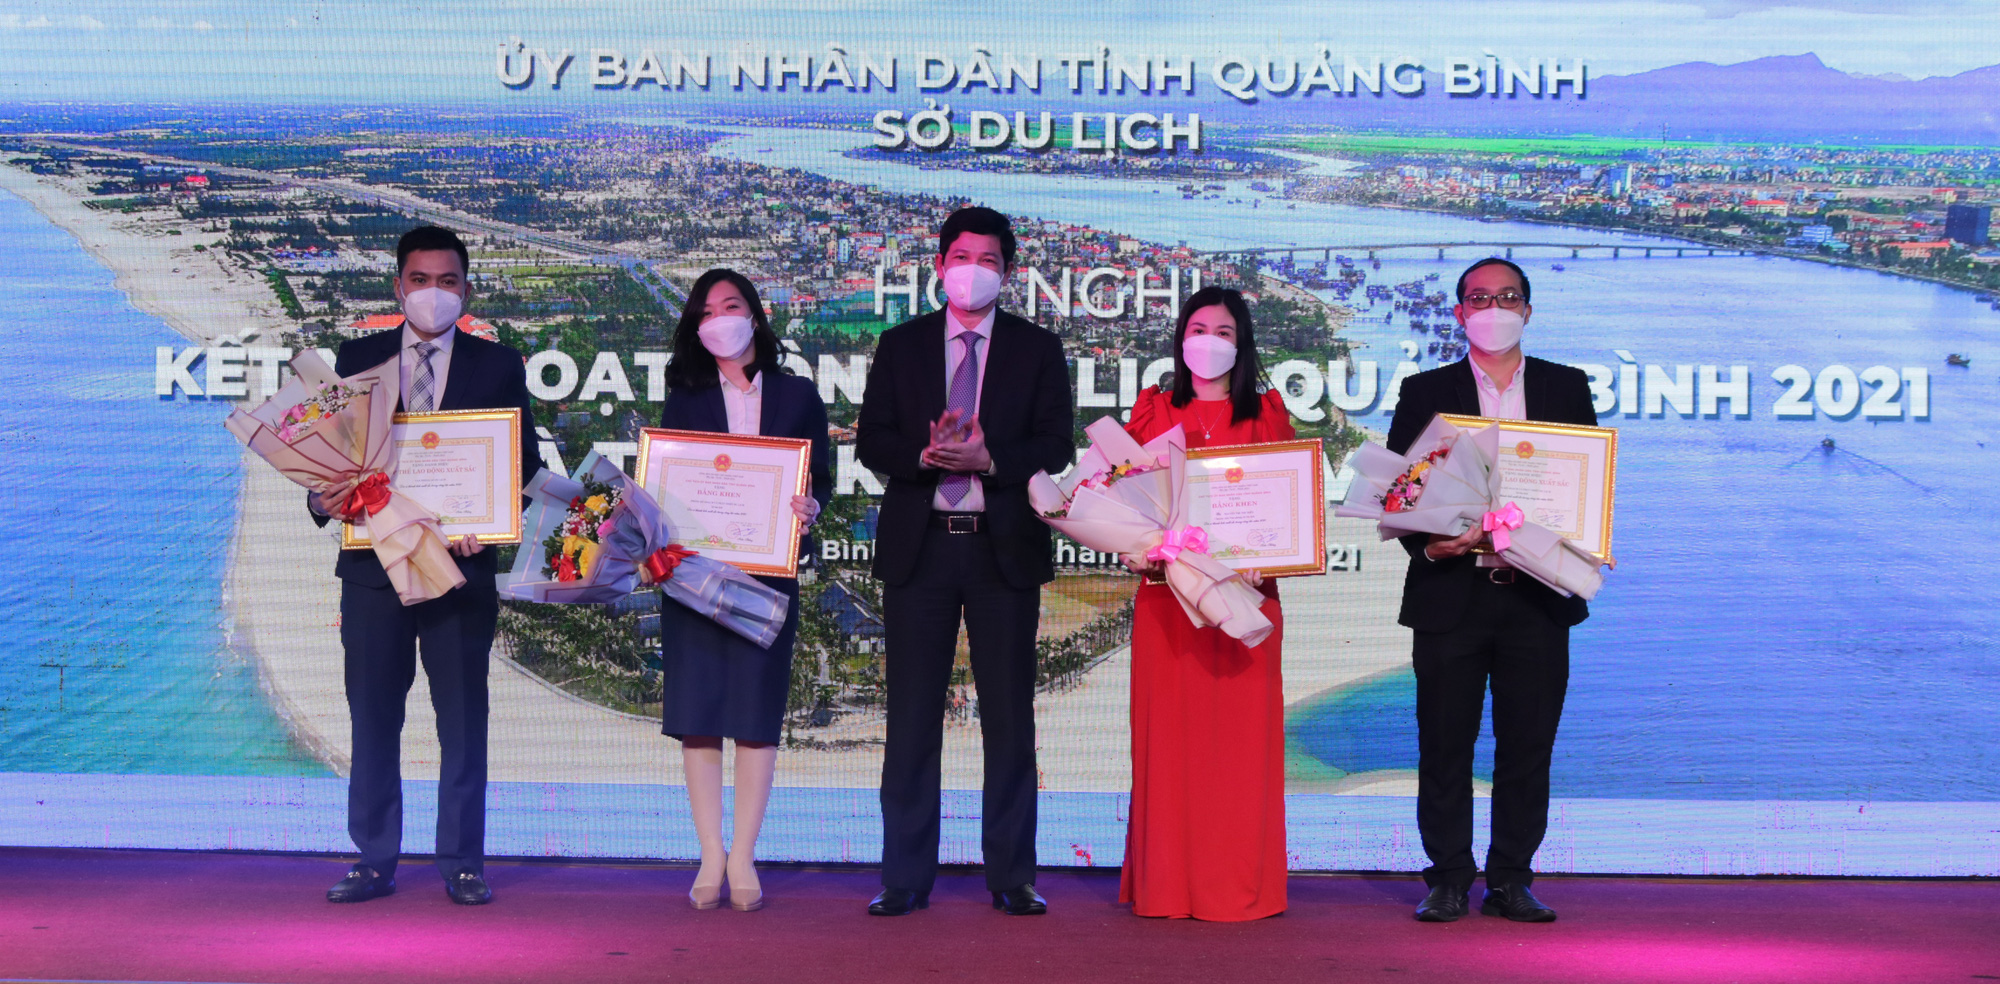 Truyền thông quốc tế đánh giá cao du lịch Quảng Bình trong năm 2021 - Ảnh 3.